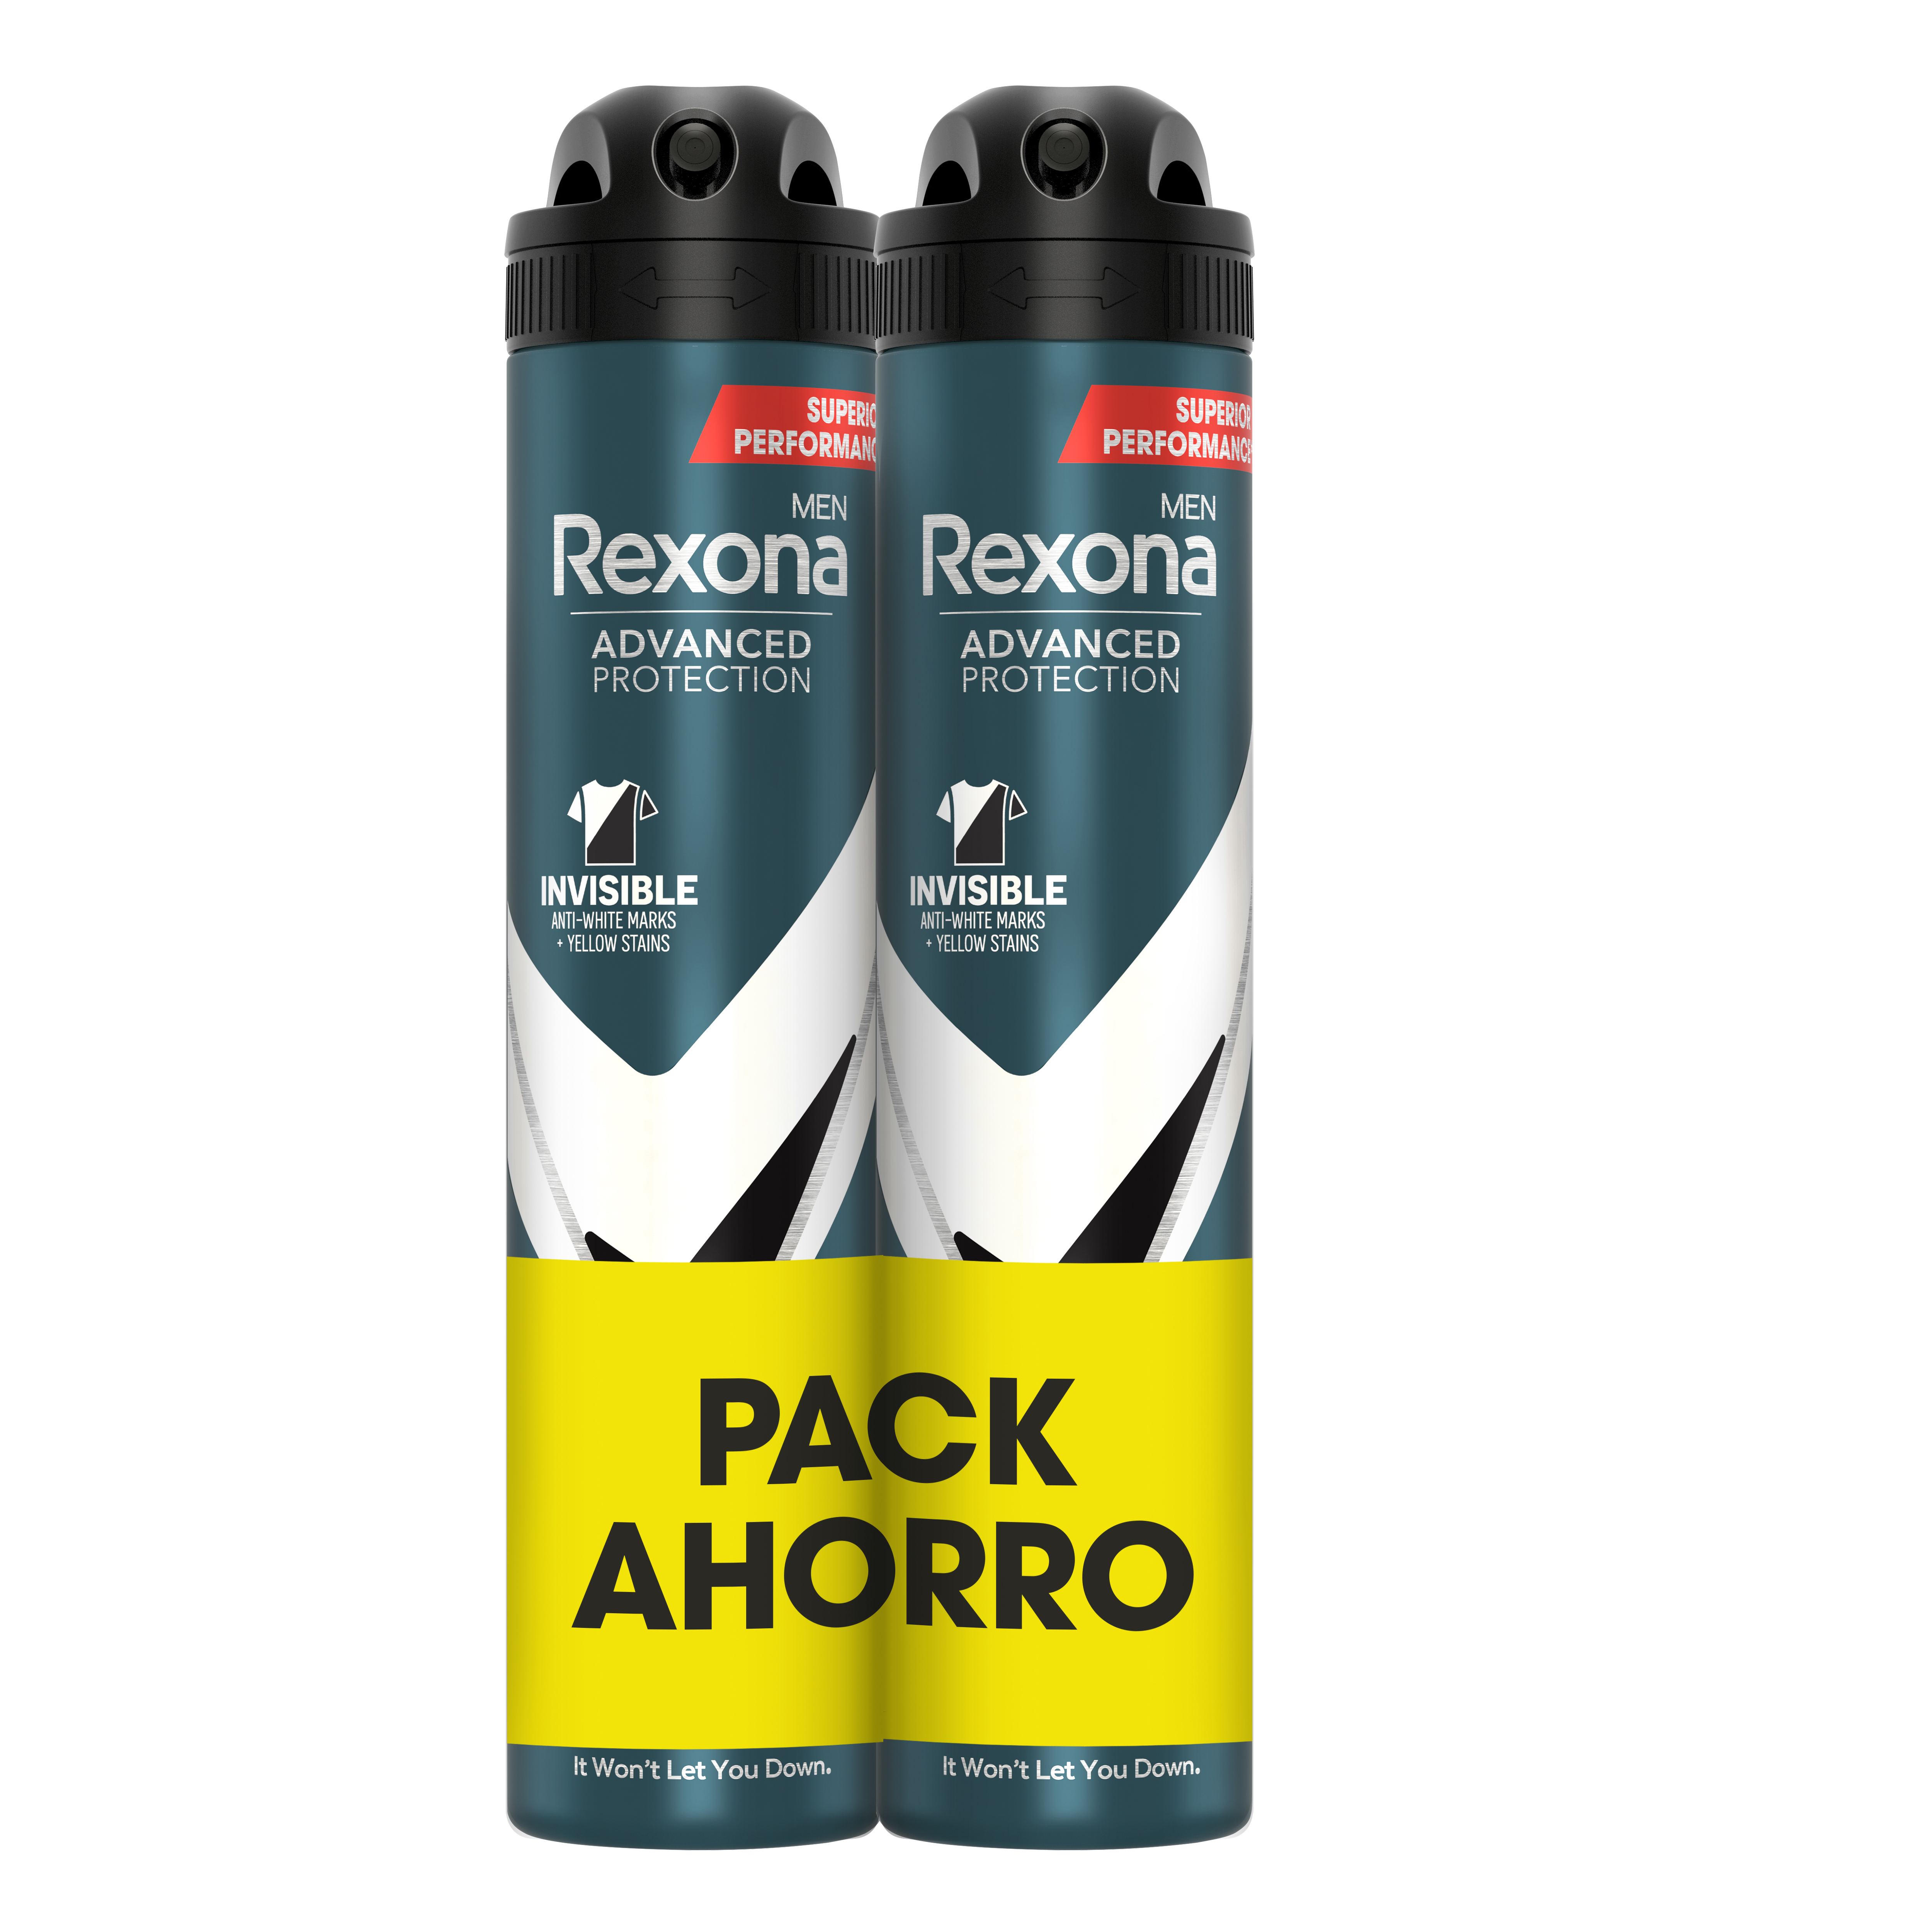 Rexona - Rexona Desodorante Invisible Black & White Antitranspirante Protección Avanzada 72h 200ml - Pack de 2